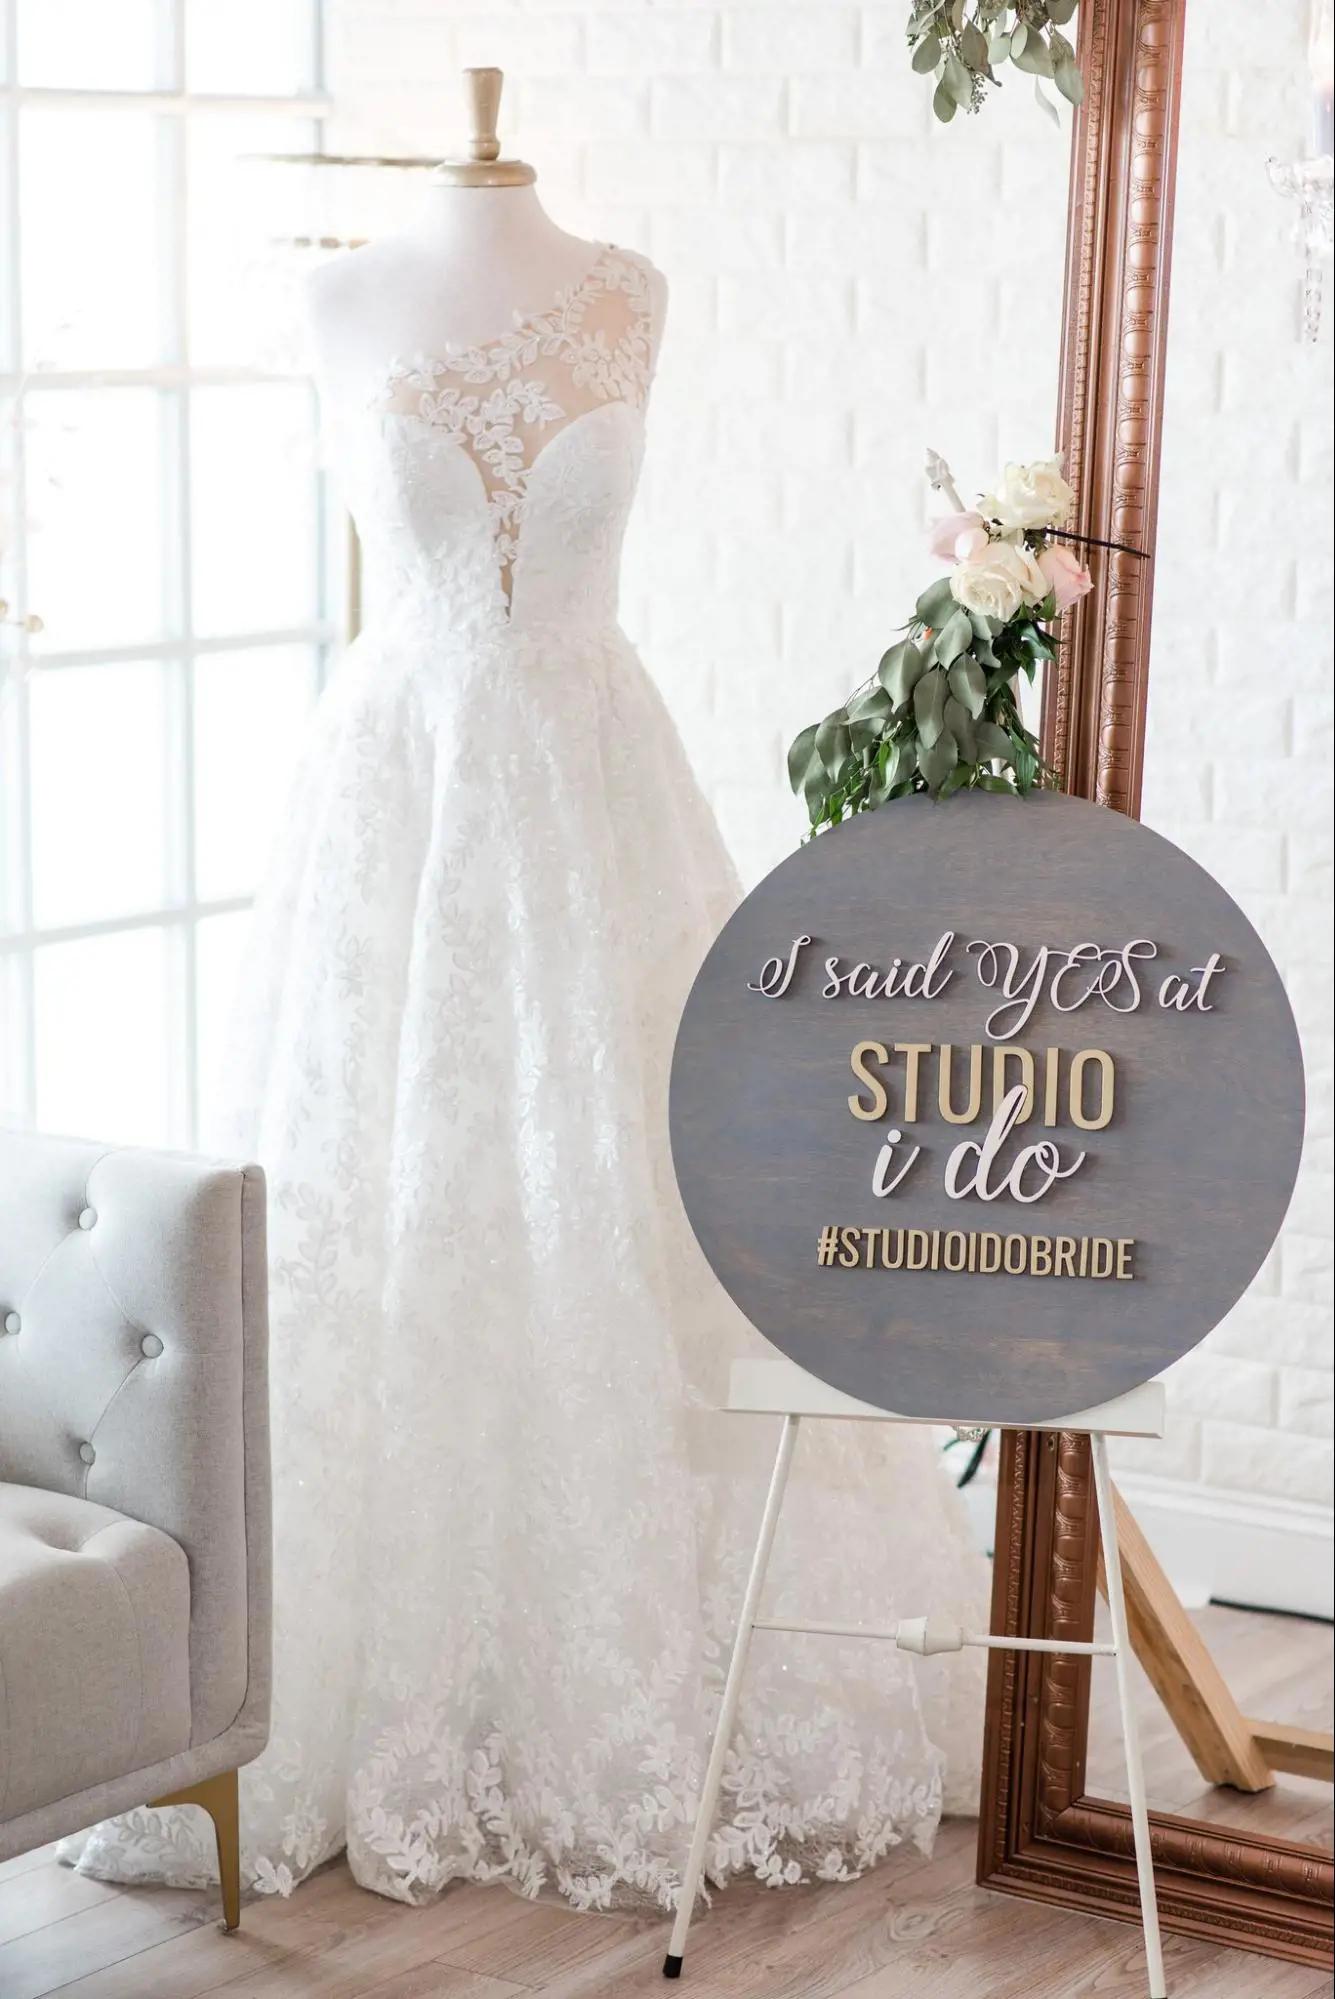 Wedding Dress Shopping Tips Image